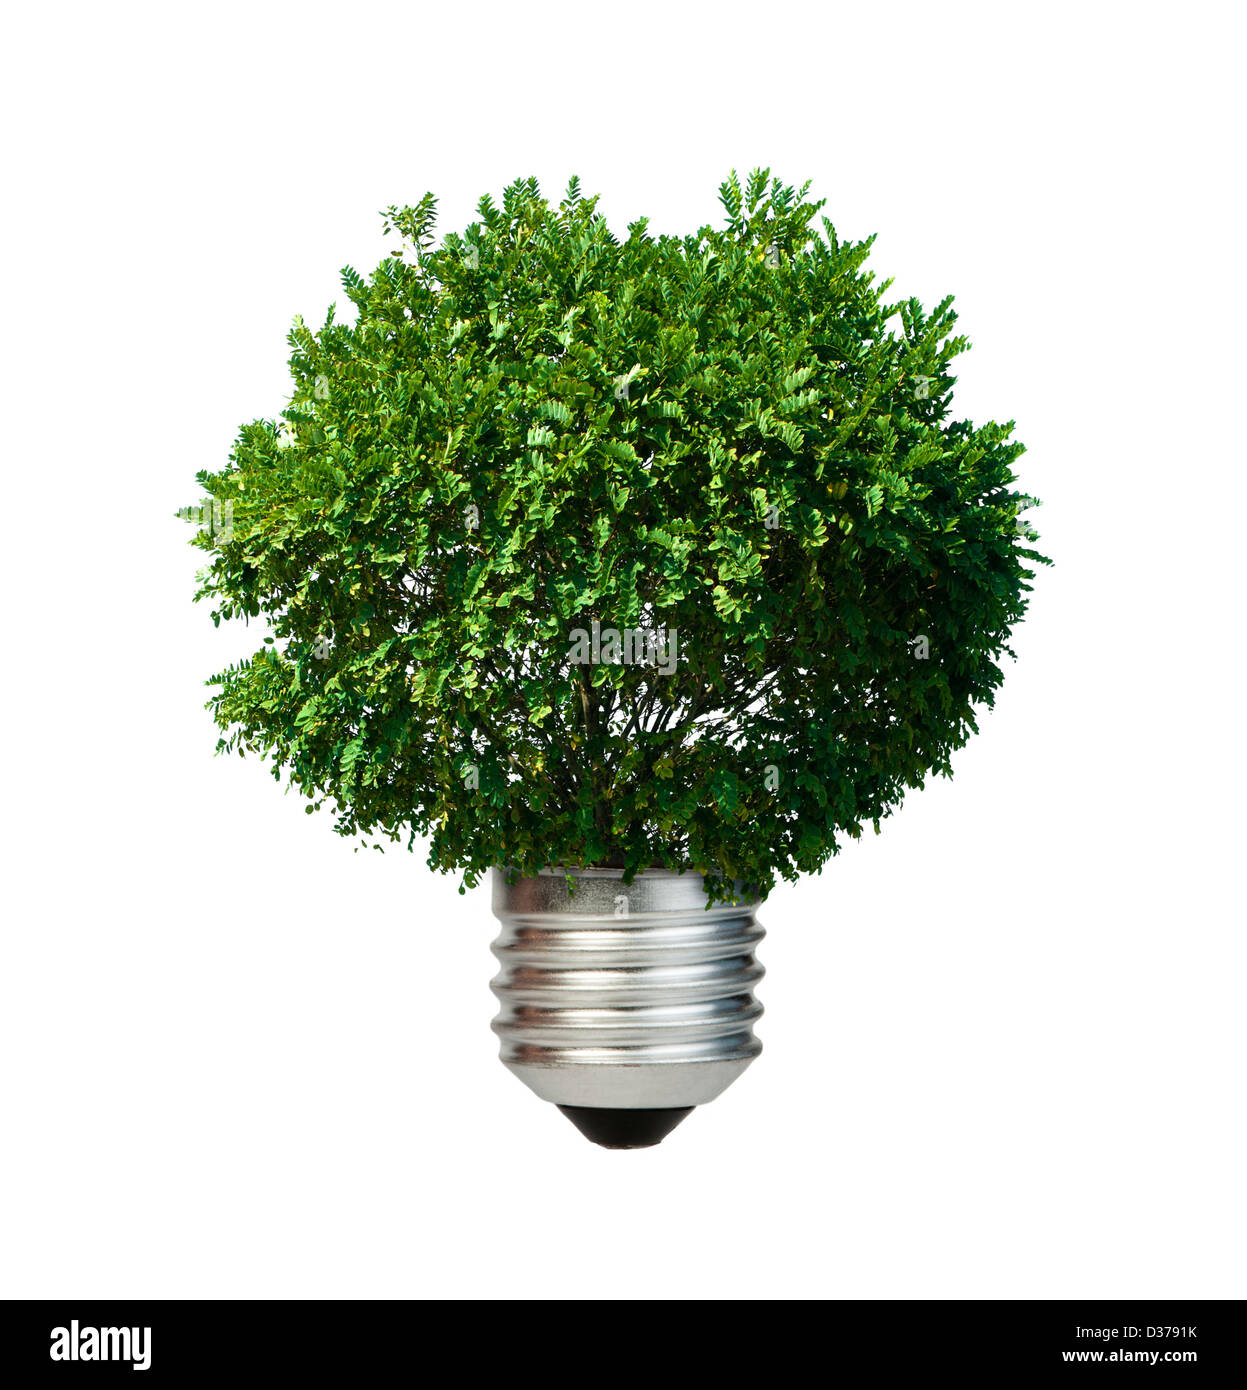 Lampe aus grüner Baum. Ökologie-Konzeption. Blauer Himmel. Stockfoto